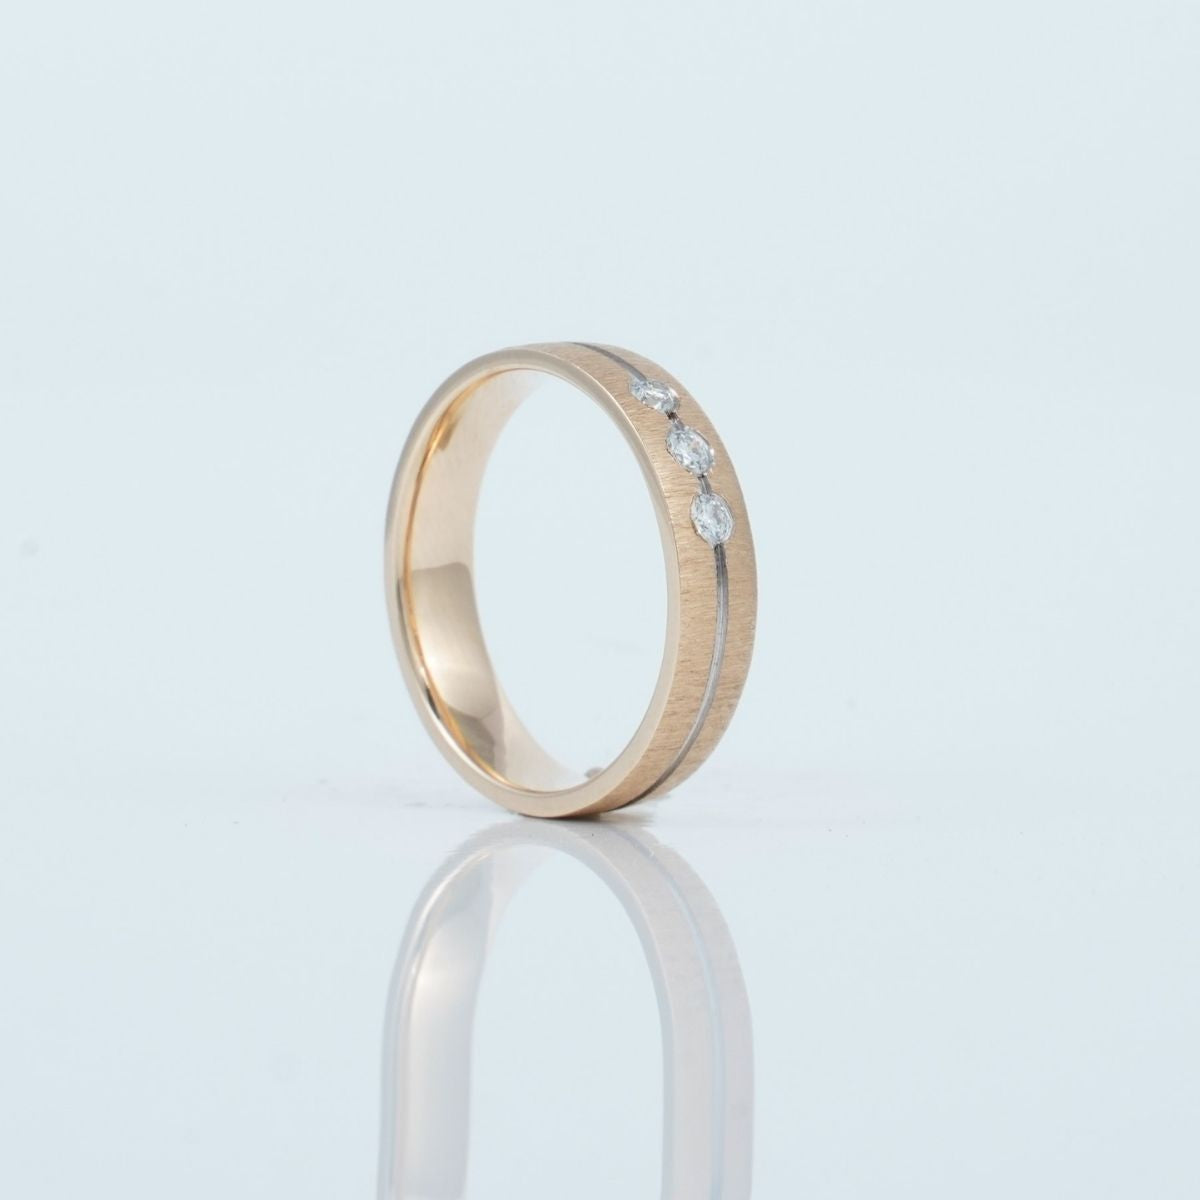 Thomas Diamond Ring